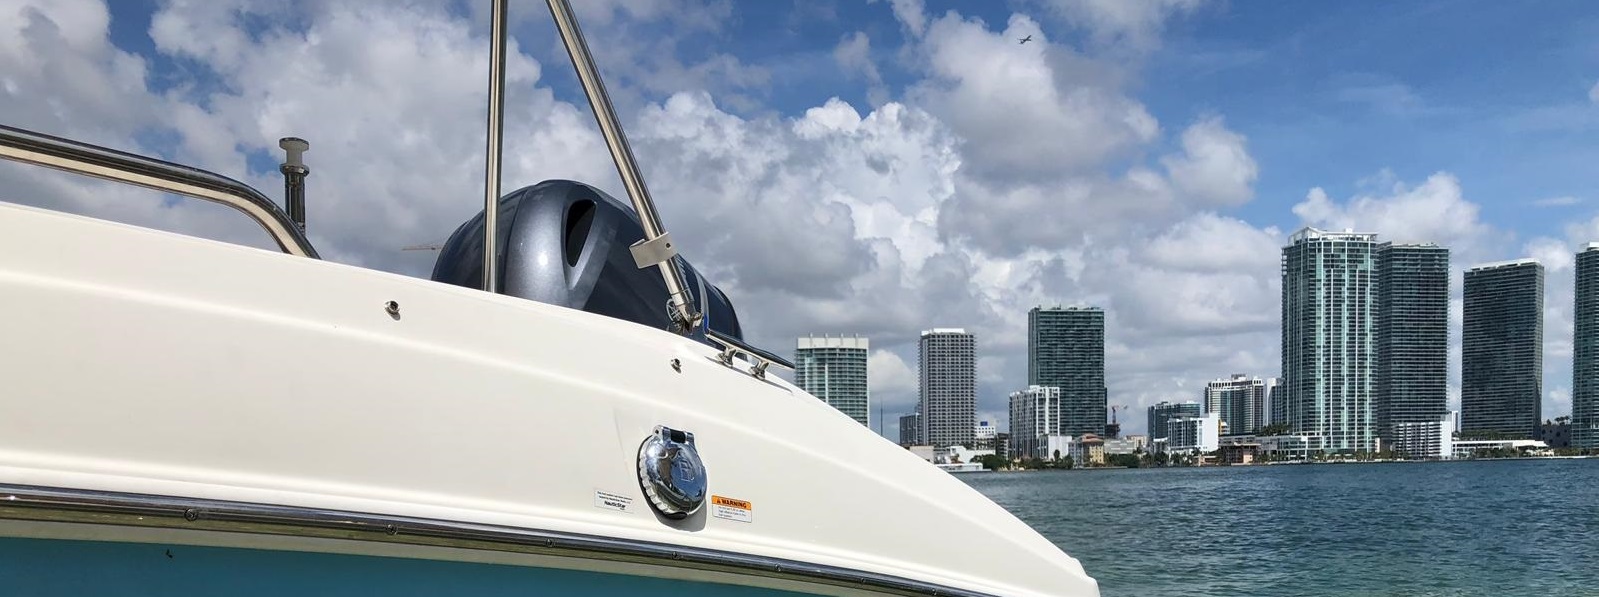 Rent a Boat in Miami Daily | Miami Rent Boat